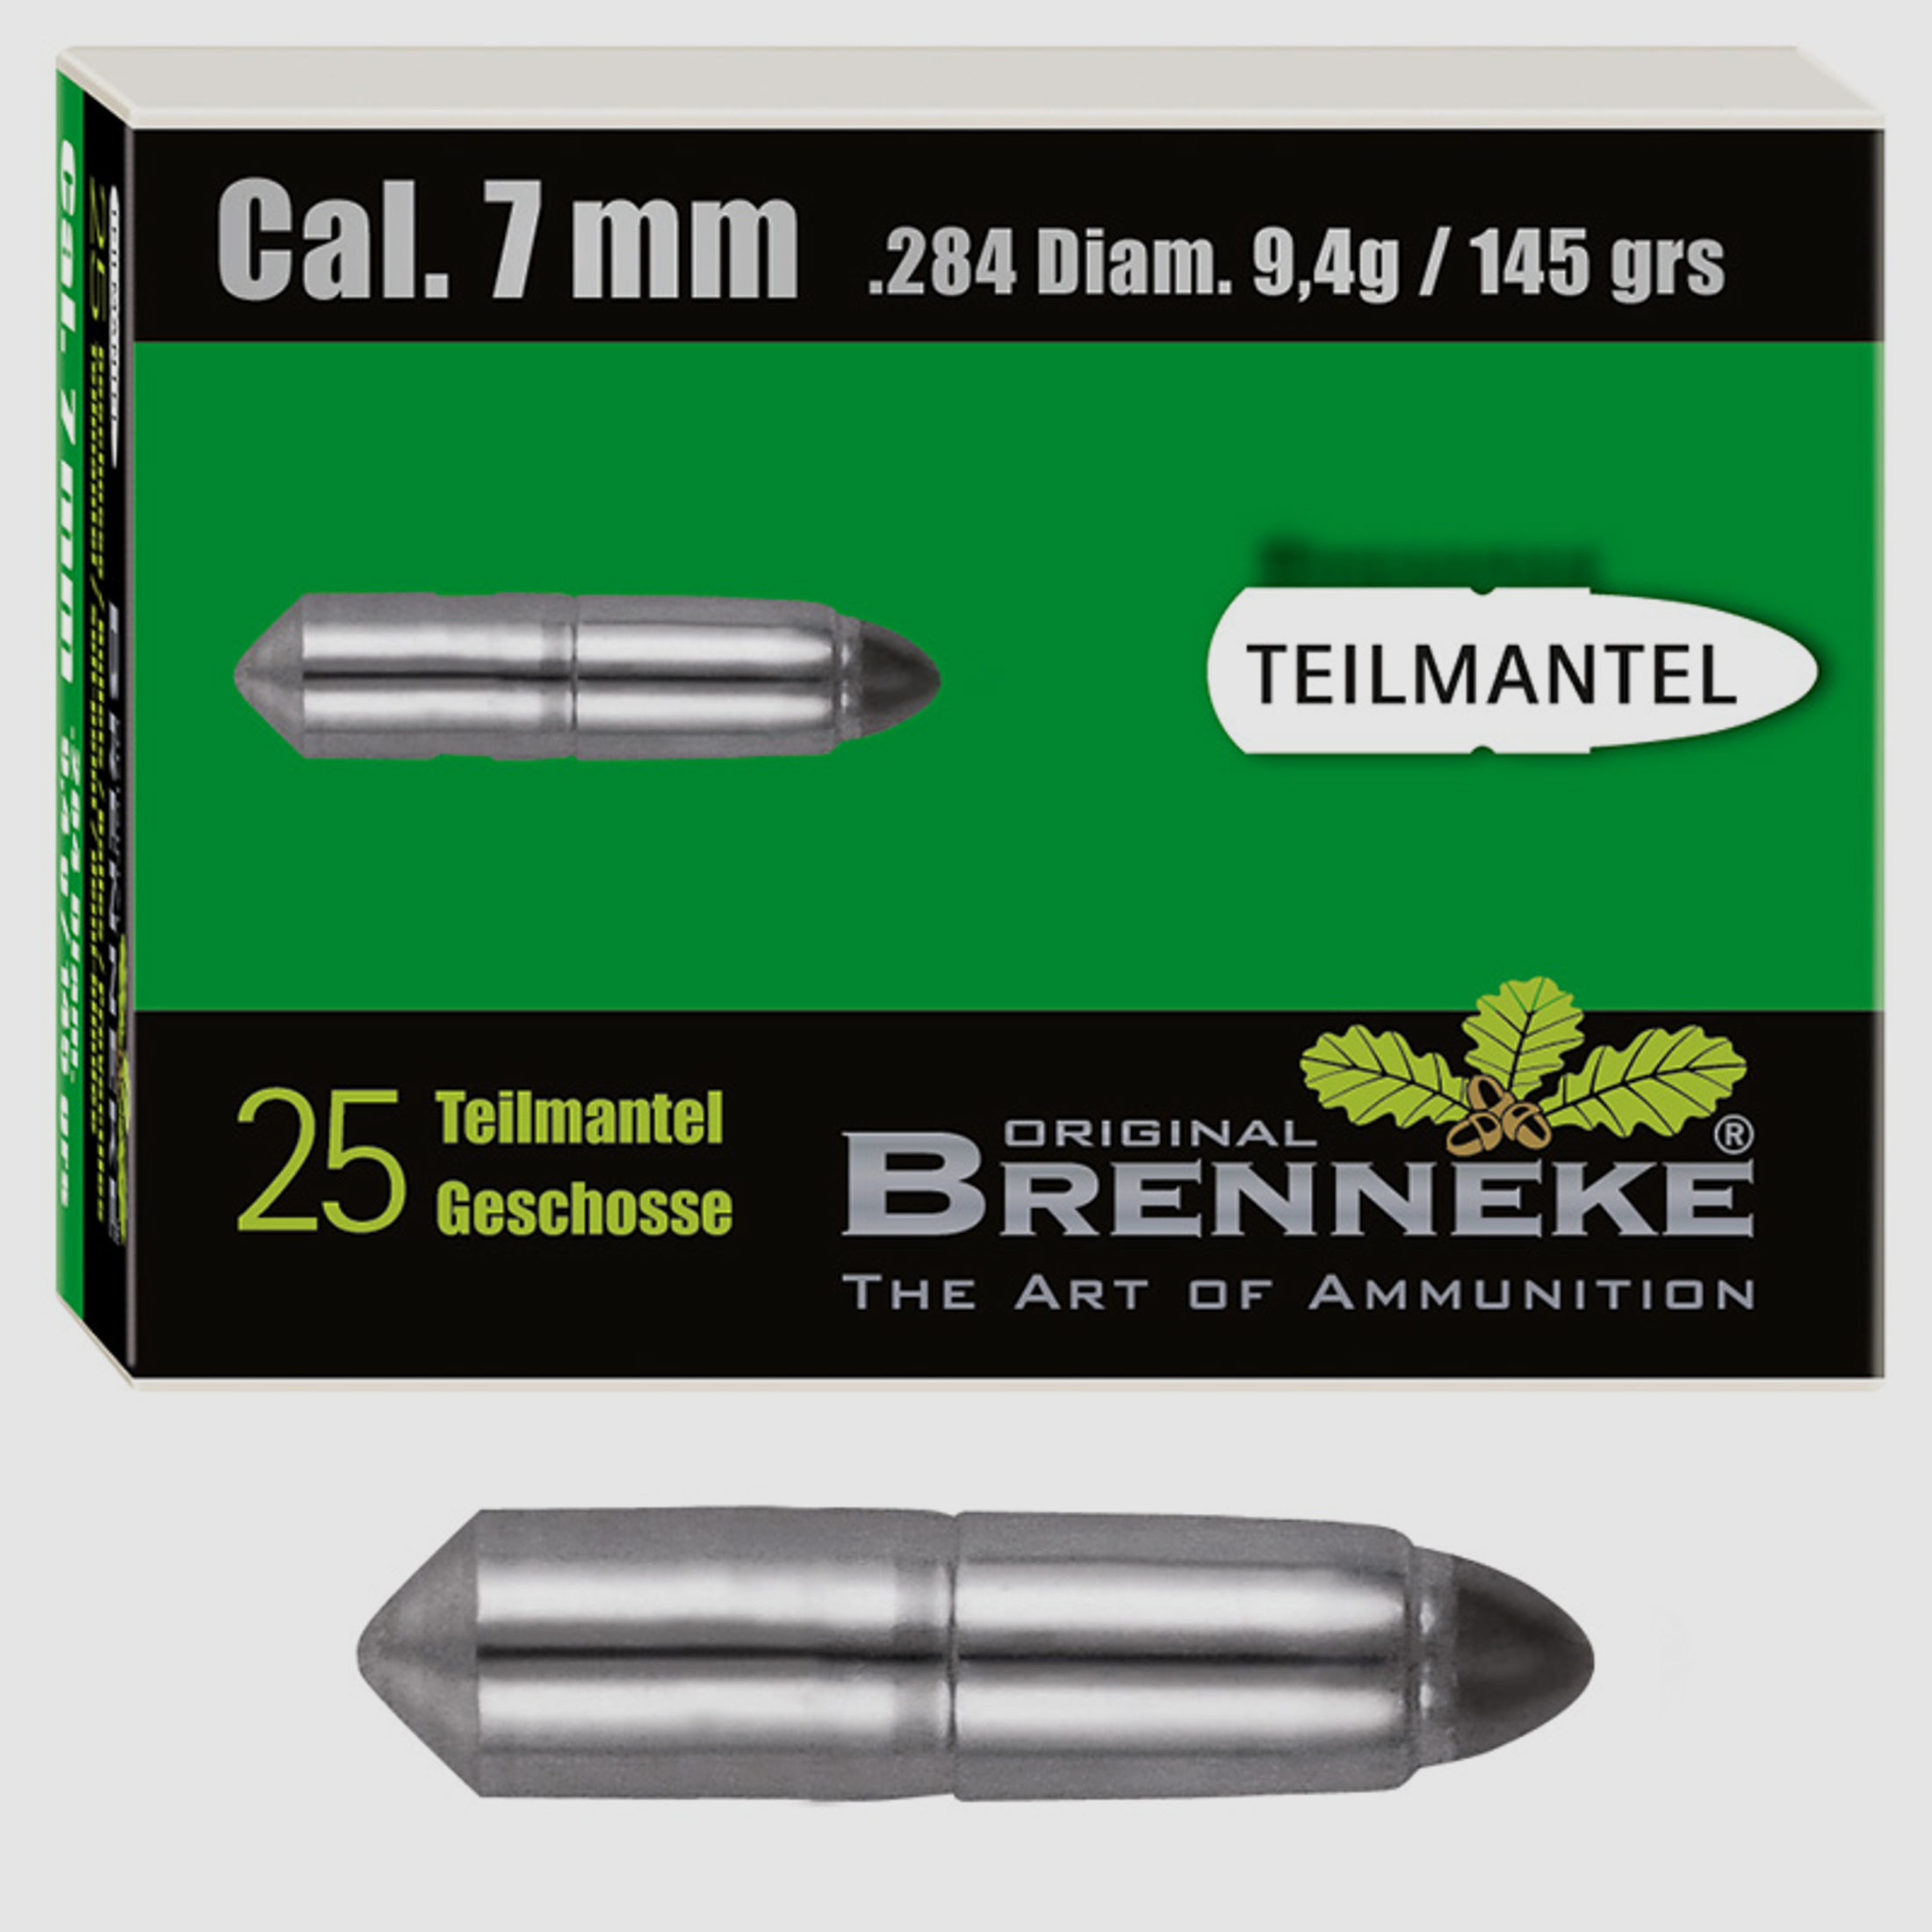 Brenneke Geschoss 7mm (.284) TM 9,4g / 145grs 25 Stück